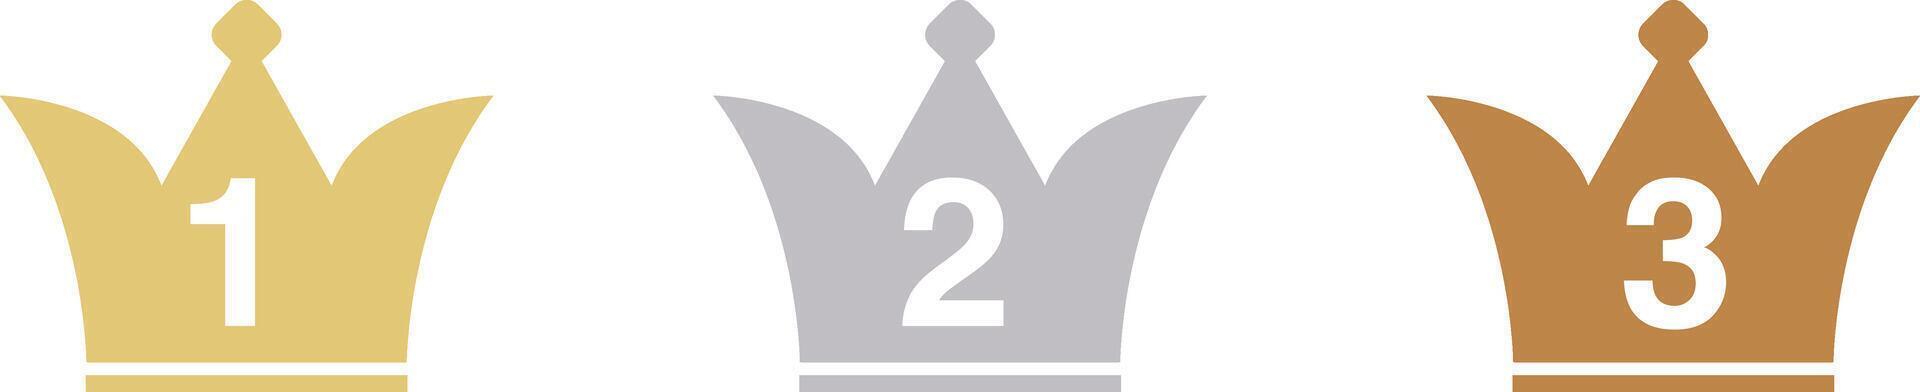 kroon icoon reeks voor ranking .drie kleuren goud, zilver, bronzen vector